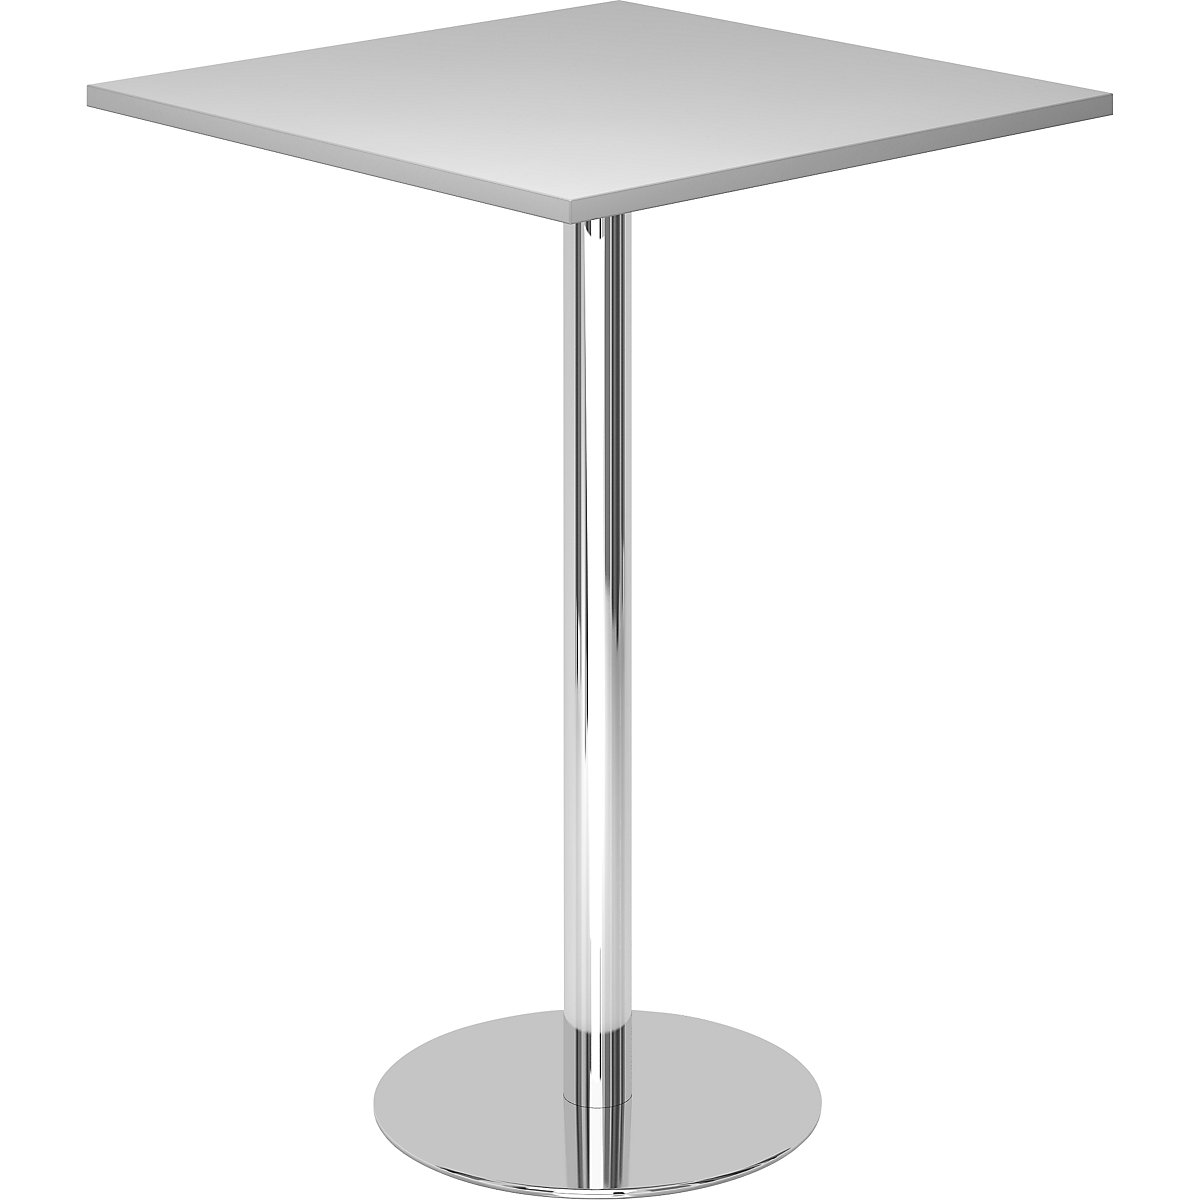 Visoki stol, DxŠ 800 x 800 mm, visina 1116 mm, kromirano postolje, ploča u svijetlosivoj boji-7